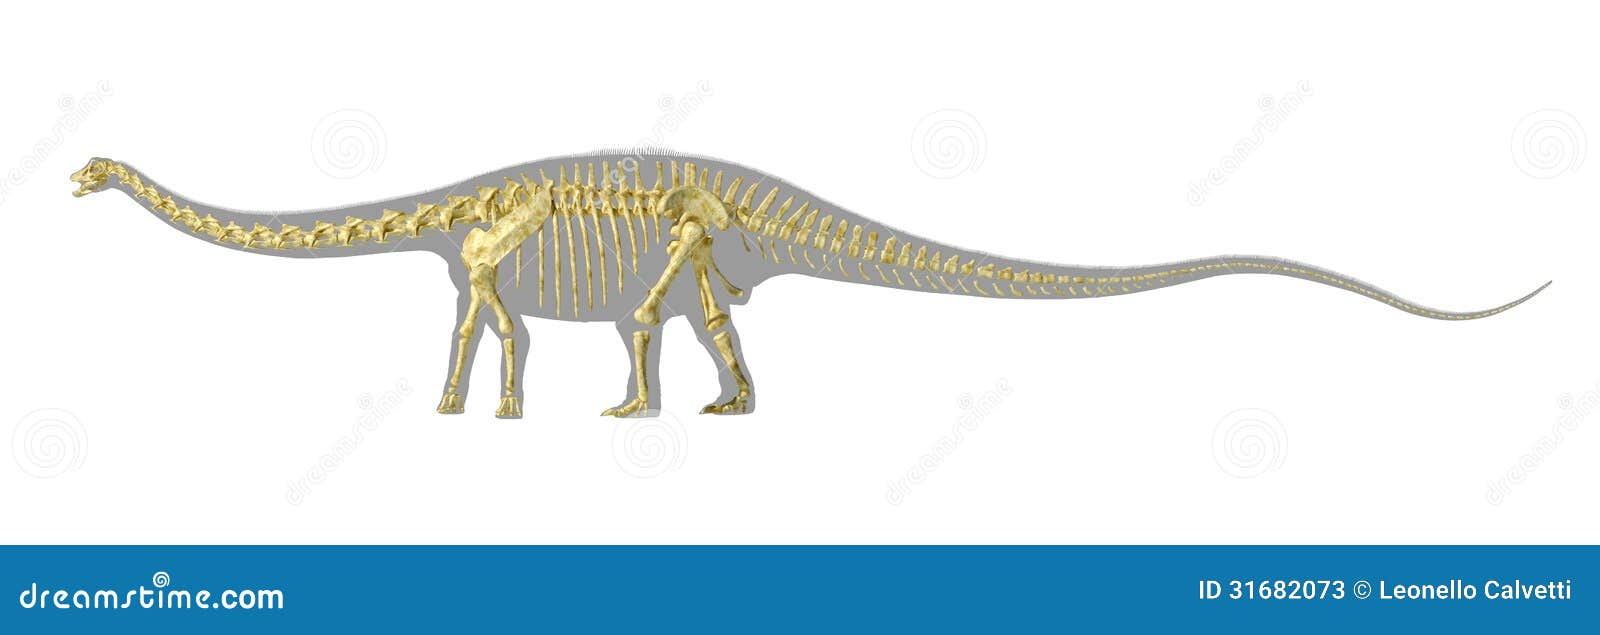 Het silhouet van de Diplodocusdinosaurus, met volledig photo-realistic skelet. Bij witte achtergrond met het knippen van weg.